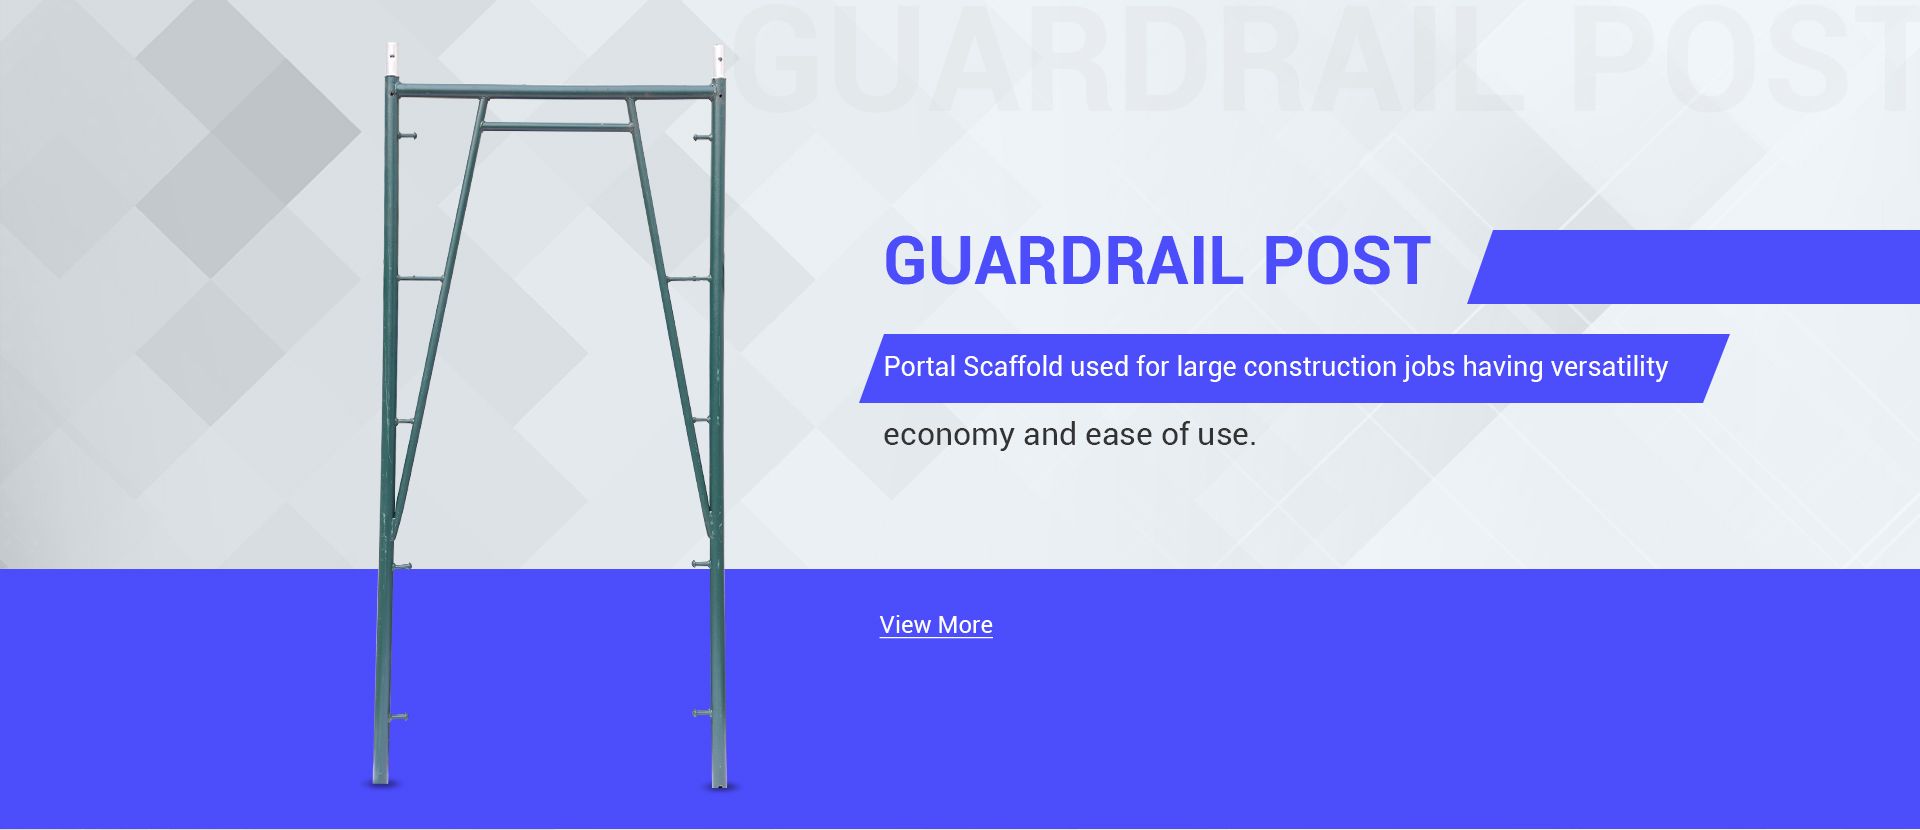 Guardrail Post